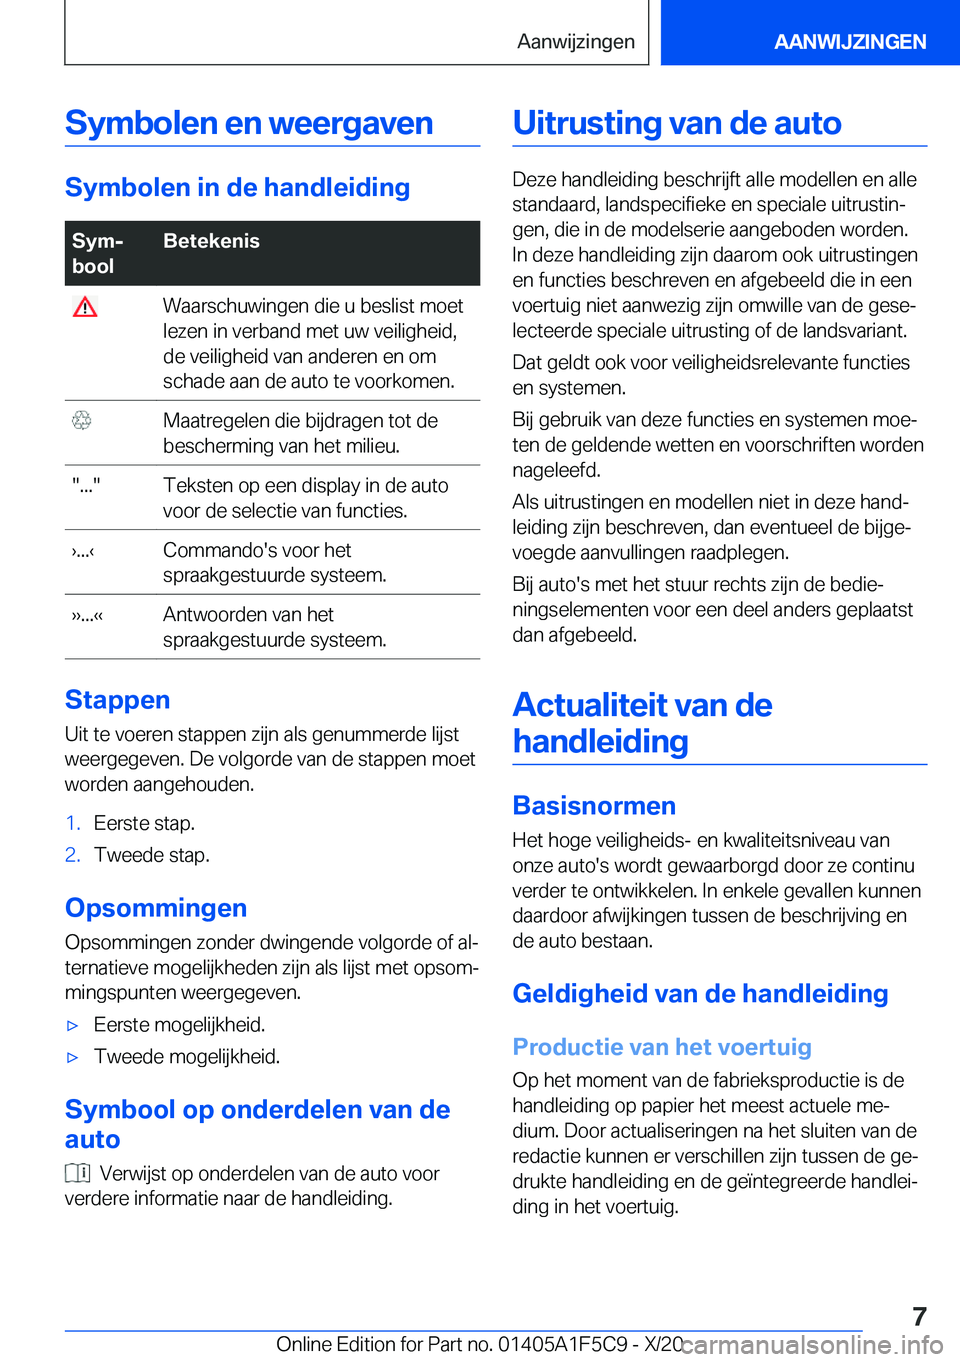 BMW X4 M 2021  Instructieboekjes (in Dutch) �S�y�m�b�o�l�e�n��e�n��w�e�e�r�g�a�v�e�n
�S�y�m�b�o�l�e�n��i�n��d�e��h�a�n�d�l�e�i�d�i�n�g
�S�y�mj
�b�o�o�l�B�e�t�e�k�e�n�i�s��W�a�a�r�s�c�h�u�w�i�n�g�e�n��d�i�e��u��b�e�s�l�i�s�t��m�o�e�t
